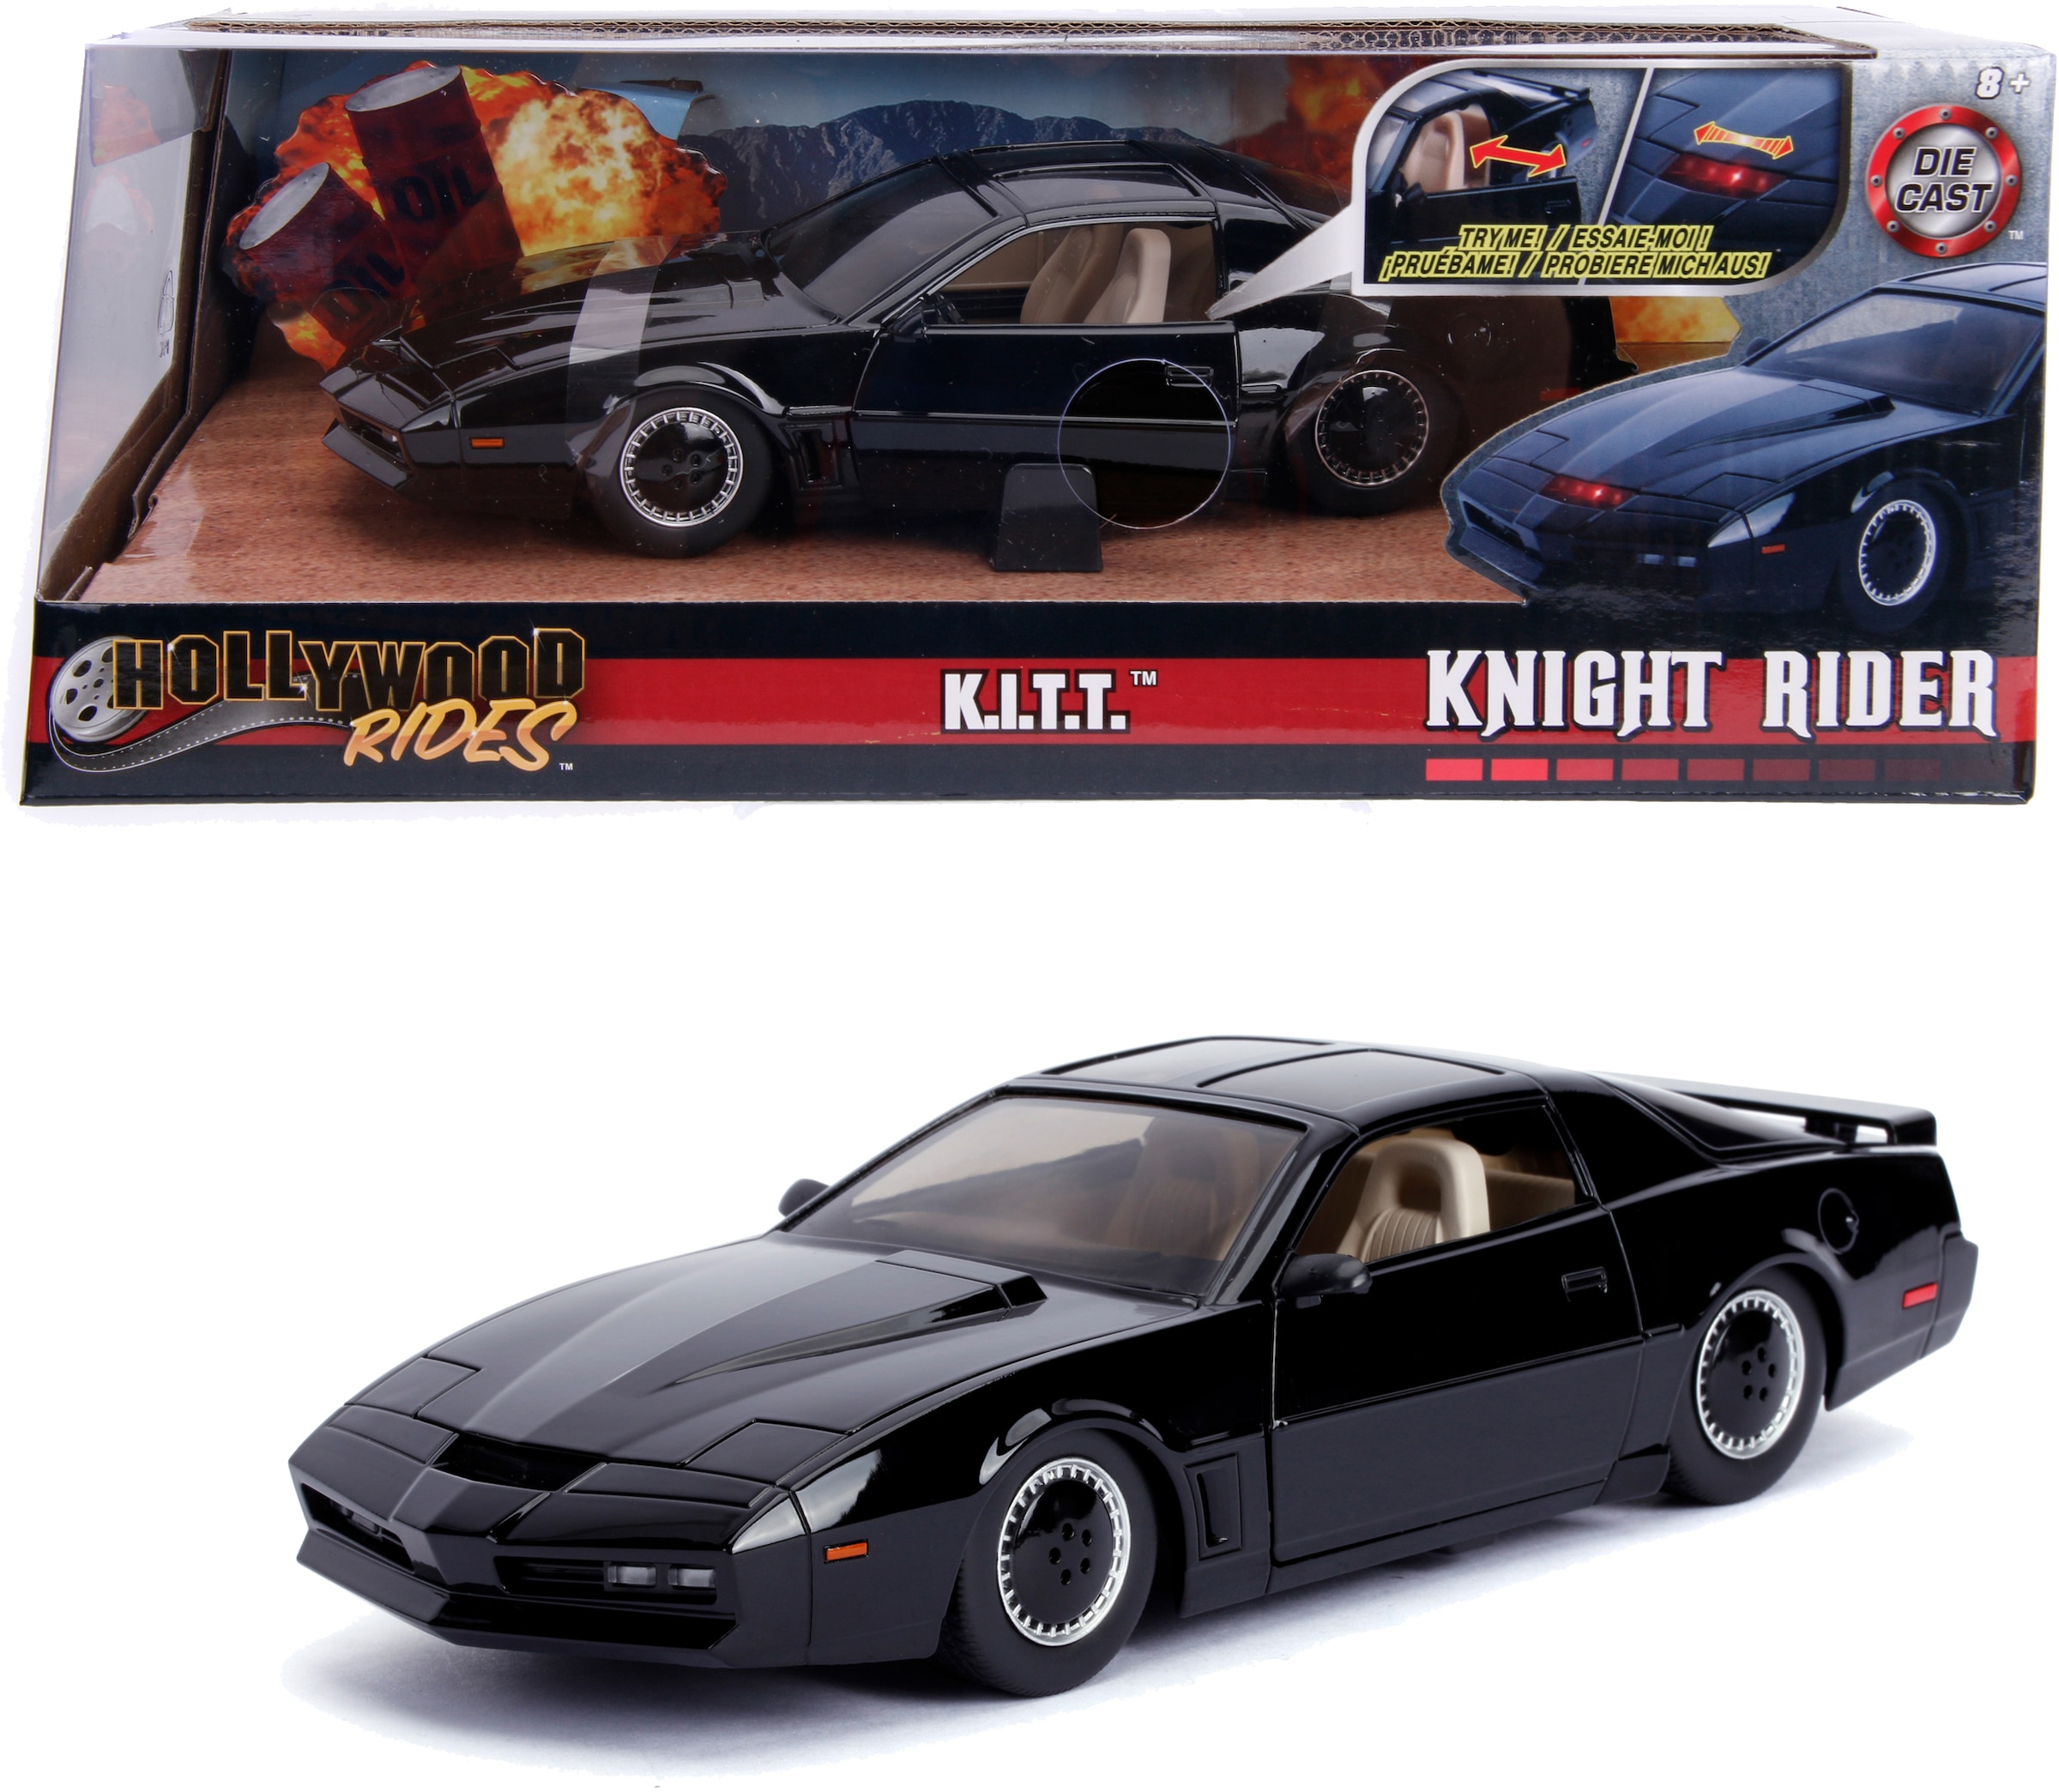 Spielzeug-Auto »Knight Rider Kitt«, mit Licht